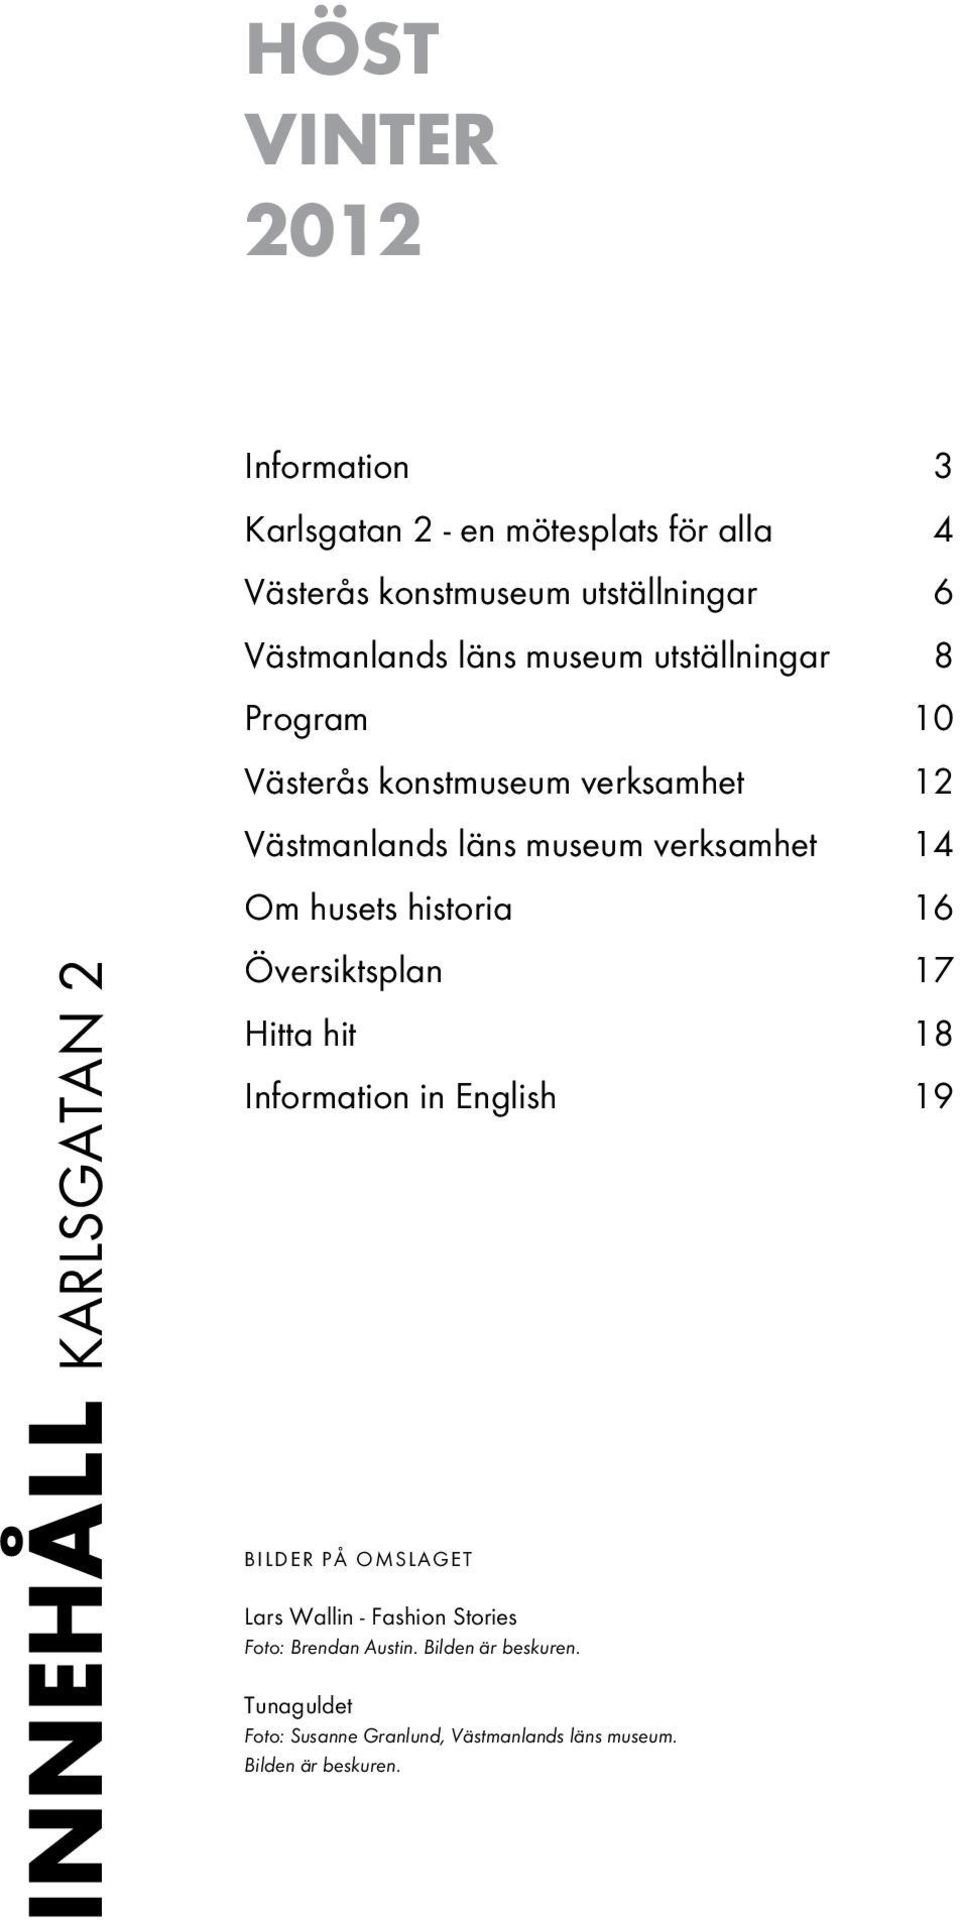 museum verksamhet 14 Om husets historia 16 Översiktsplan 17 Hitta hit 18 Information in English 19 BILDER PÅ OMSLAGET Lars